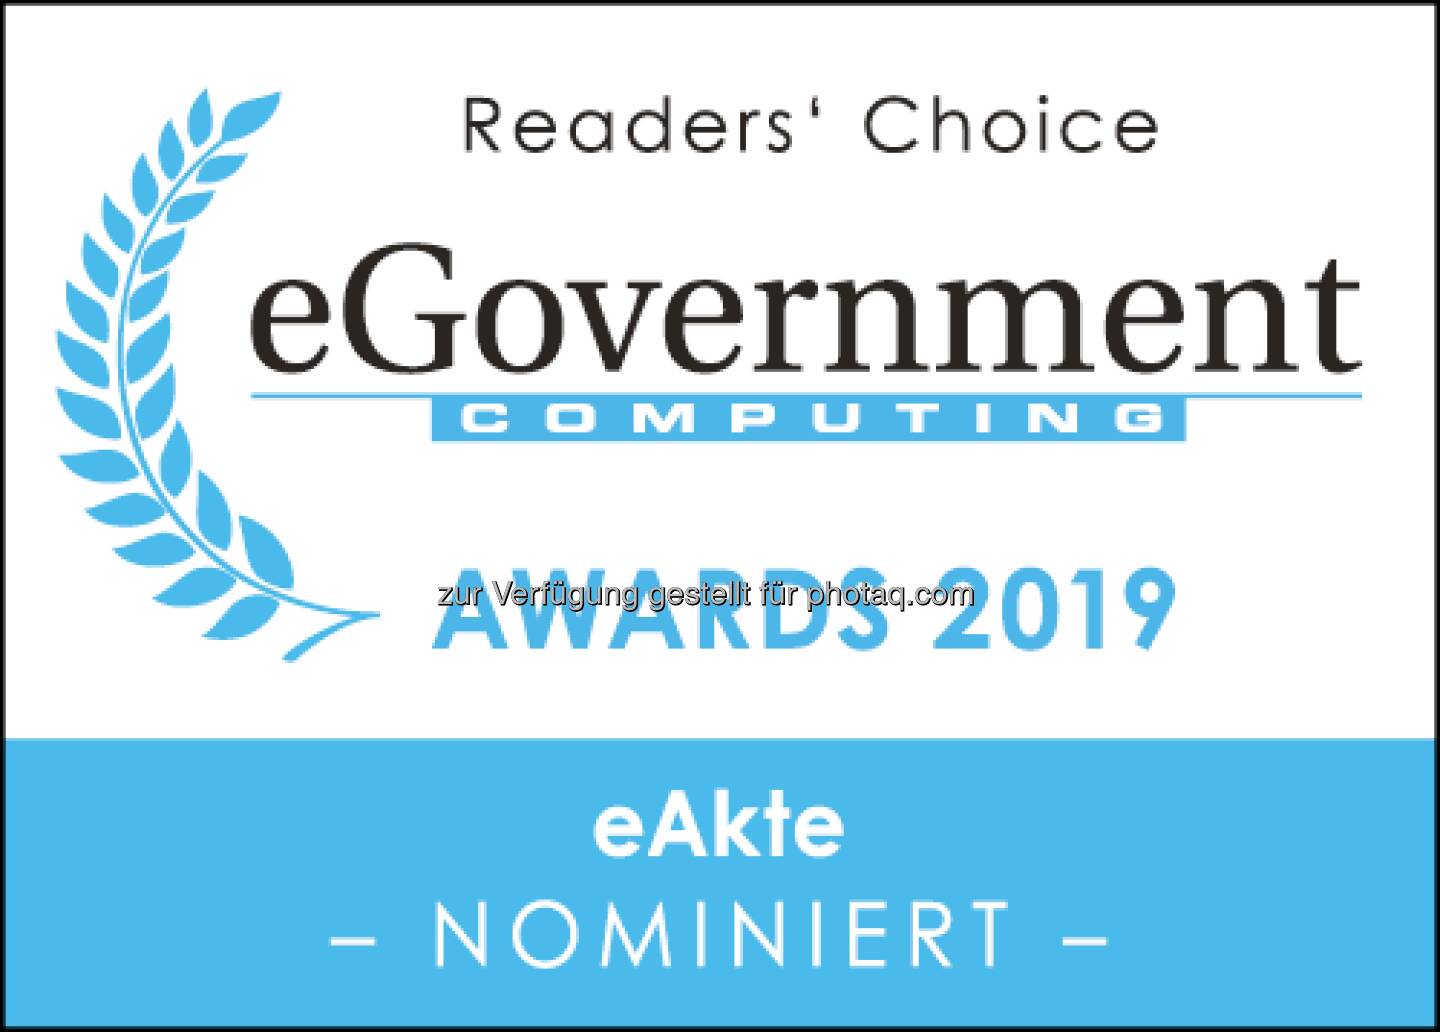 Fabasoft ist auch dieses Jahr wieder für den eGovernment Award 2019 in der Kategorie eAkte nominiert! Wir würden uns freuen, wenn Sie unter folgendem Link für uns abstimmen: https://vogel-it.typeform.com/to/RxPSxQ

Vielen Dank für Ihre Unterstützung!  Source: http://facebook.com/fabasoft